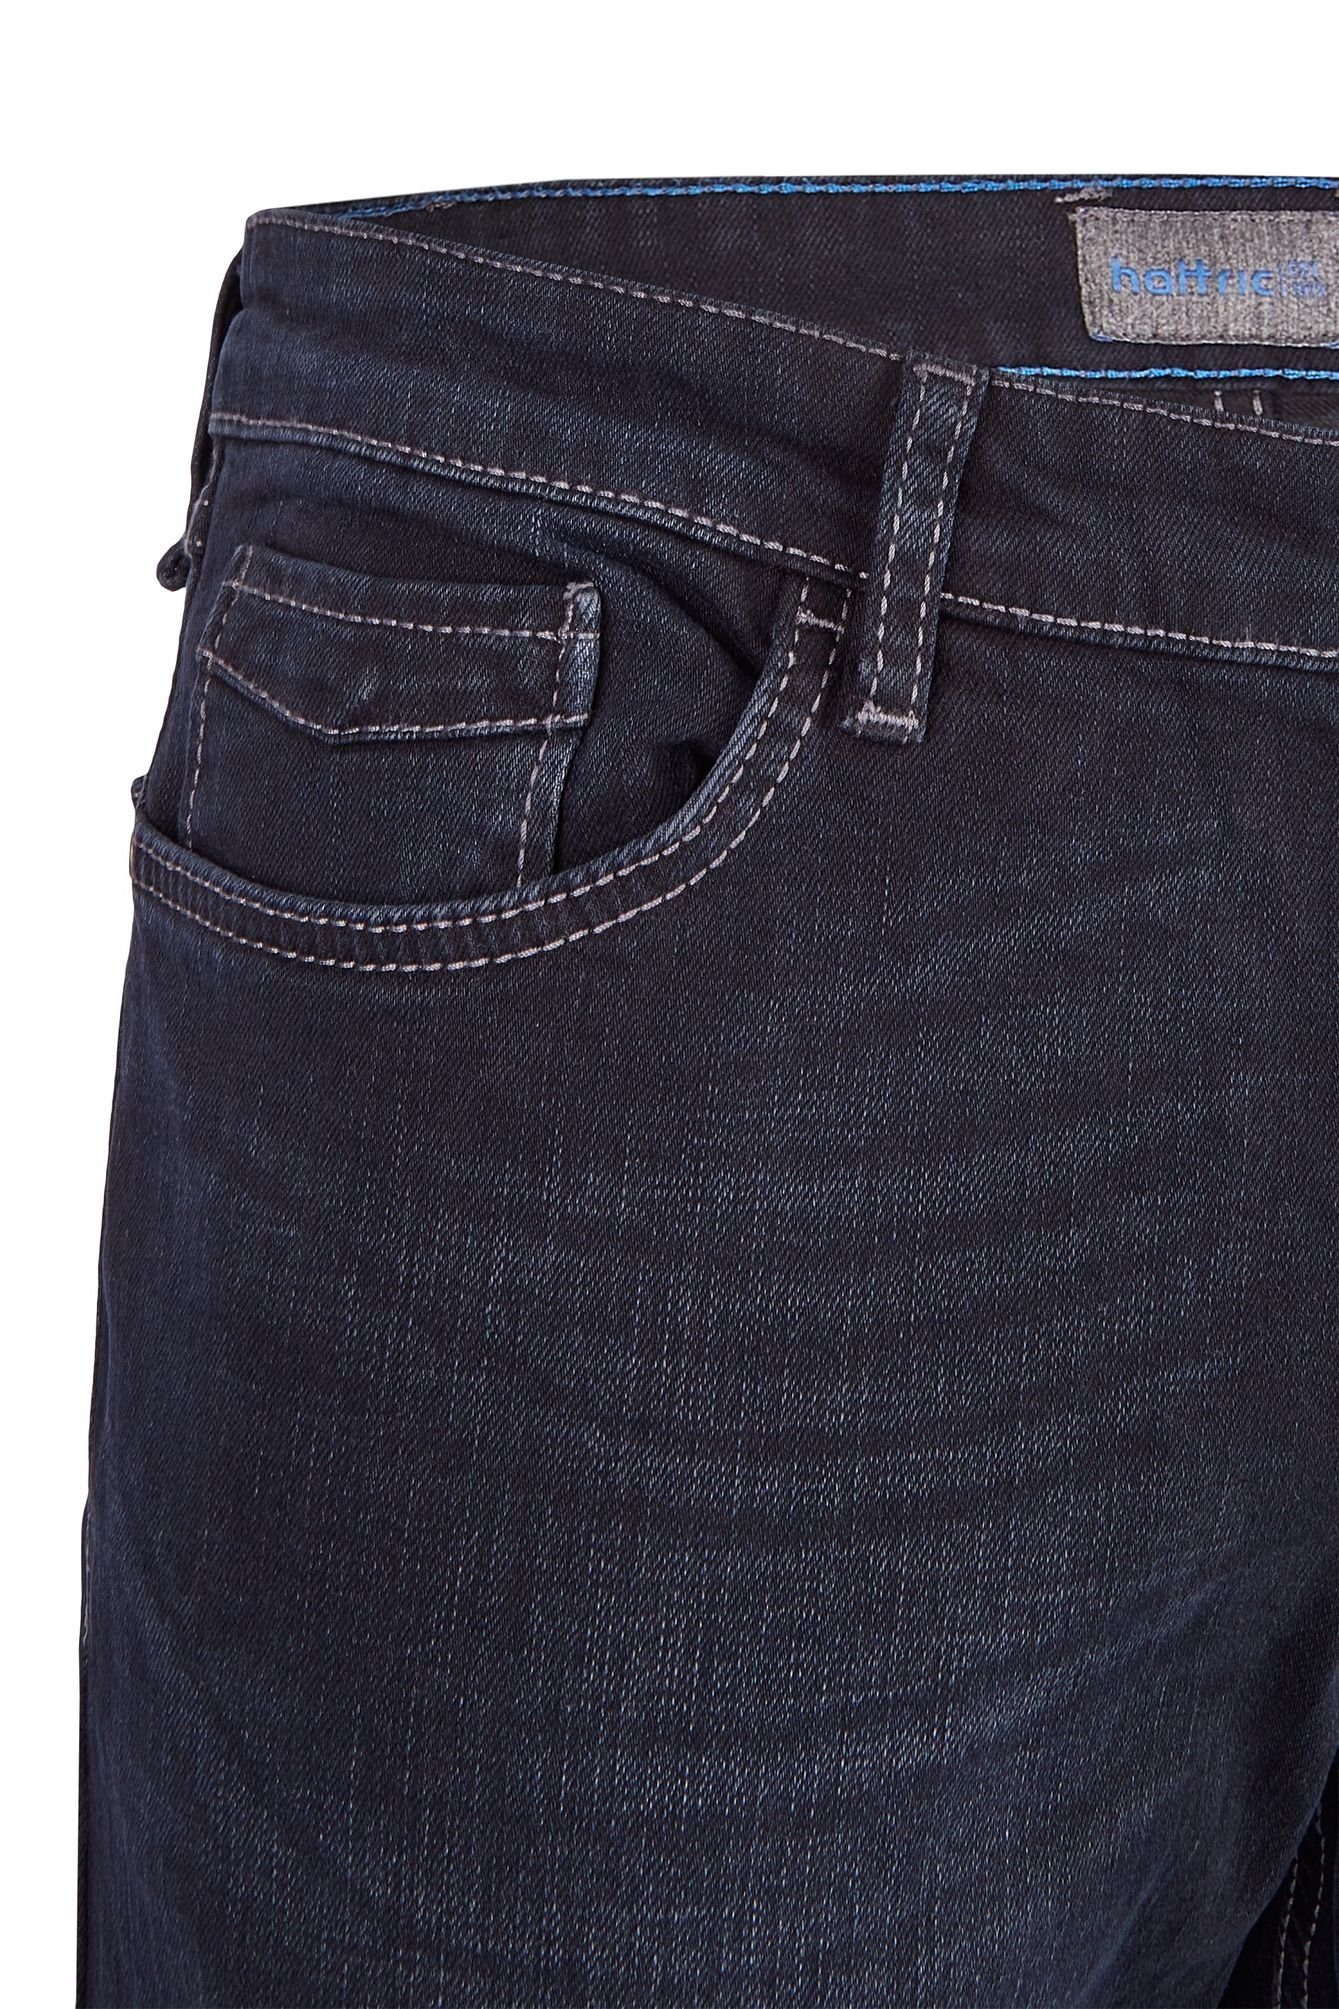 black 5-Pocket-Jeans blue Hattric 688465-9285 (89)